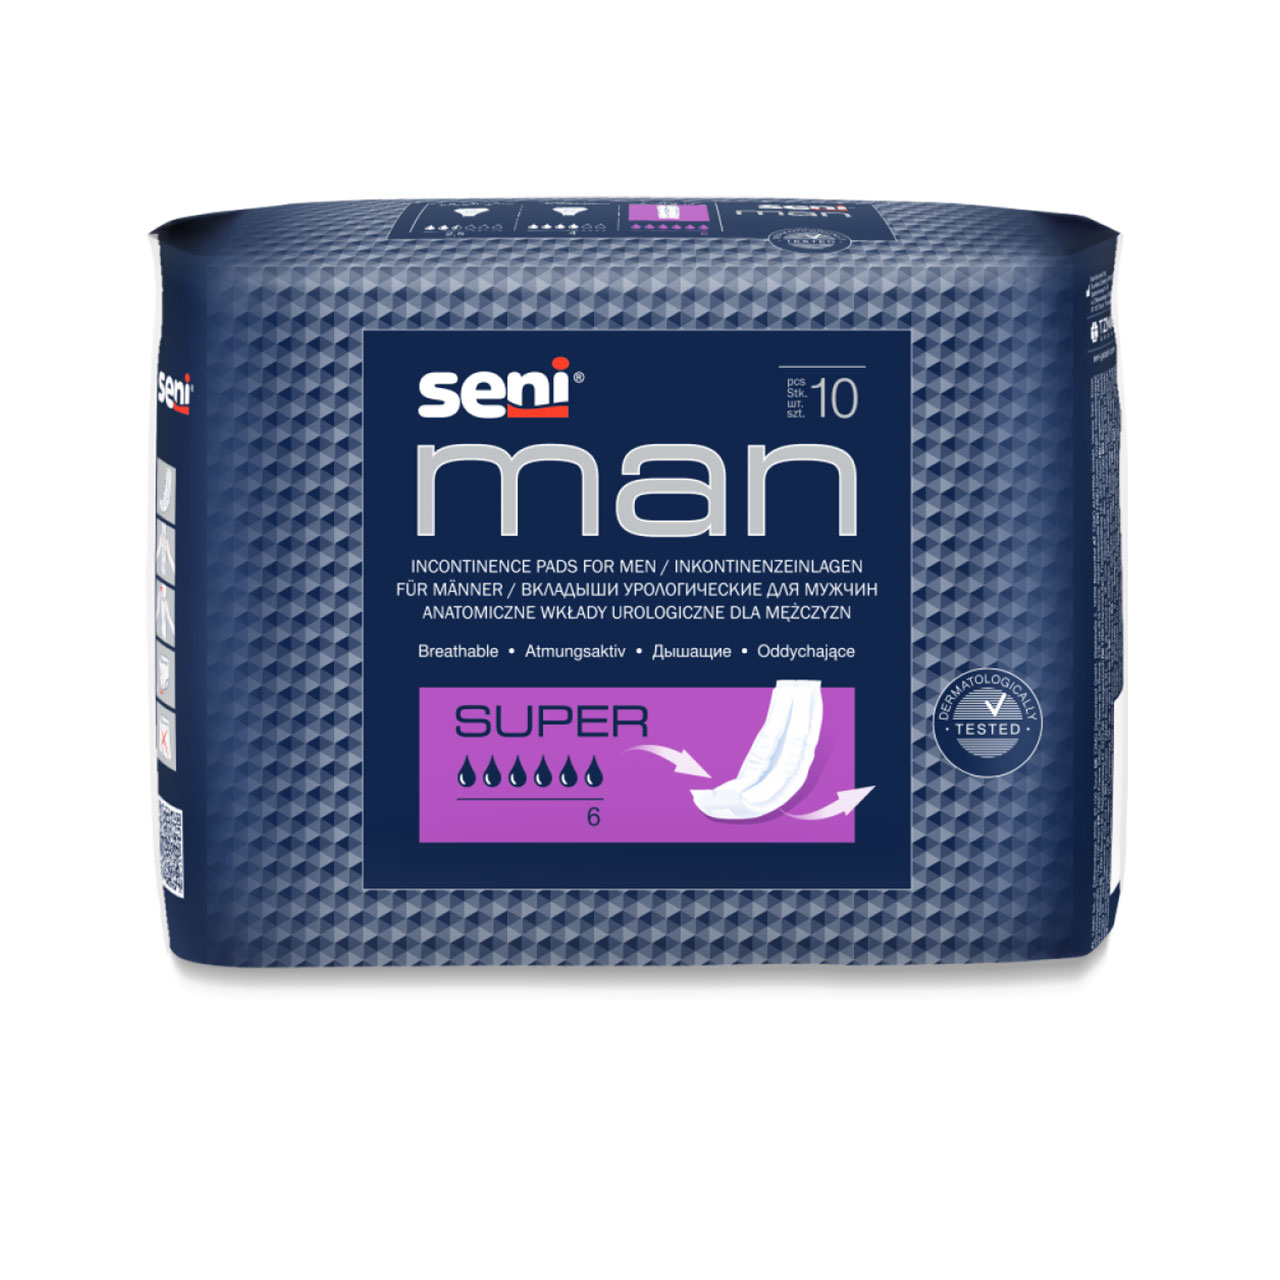 Seni Man Super (20 Stk.) - bei mittlere Inkontinenz / Blasenschwäche